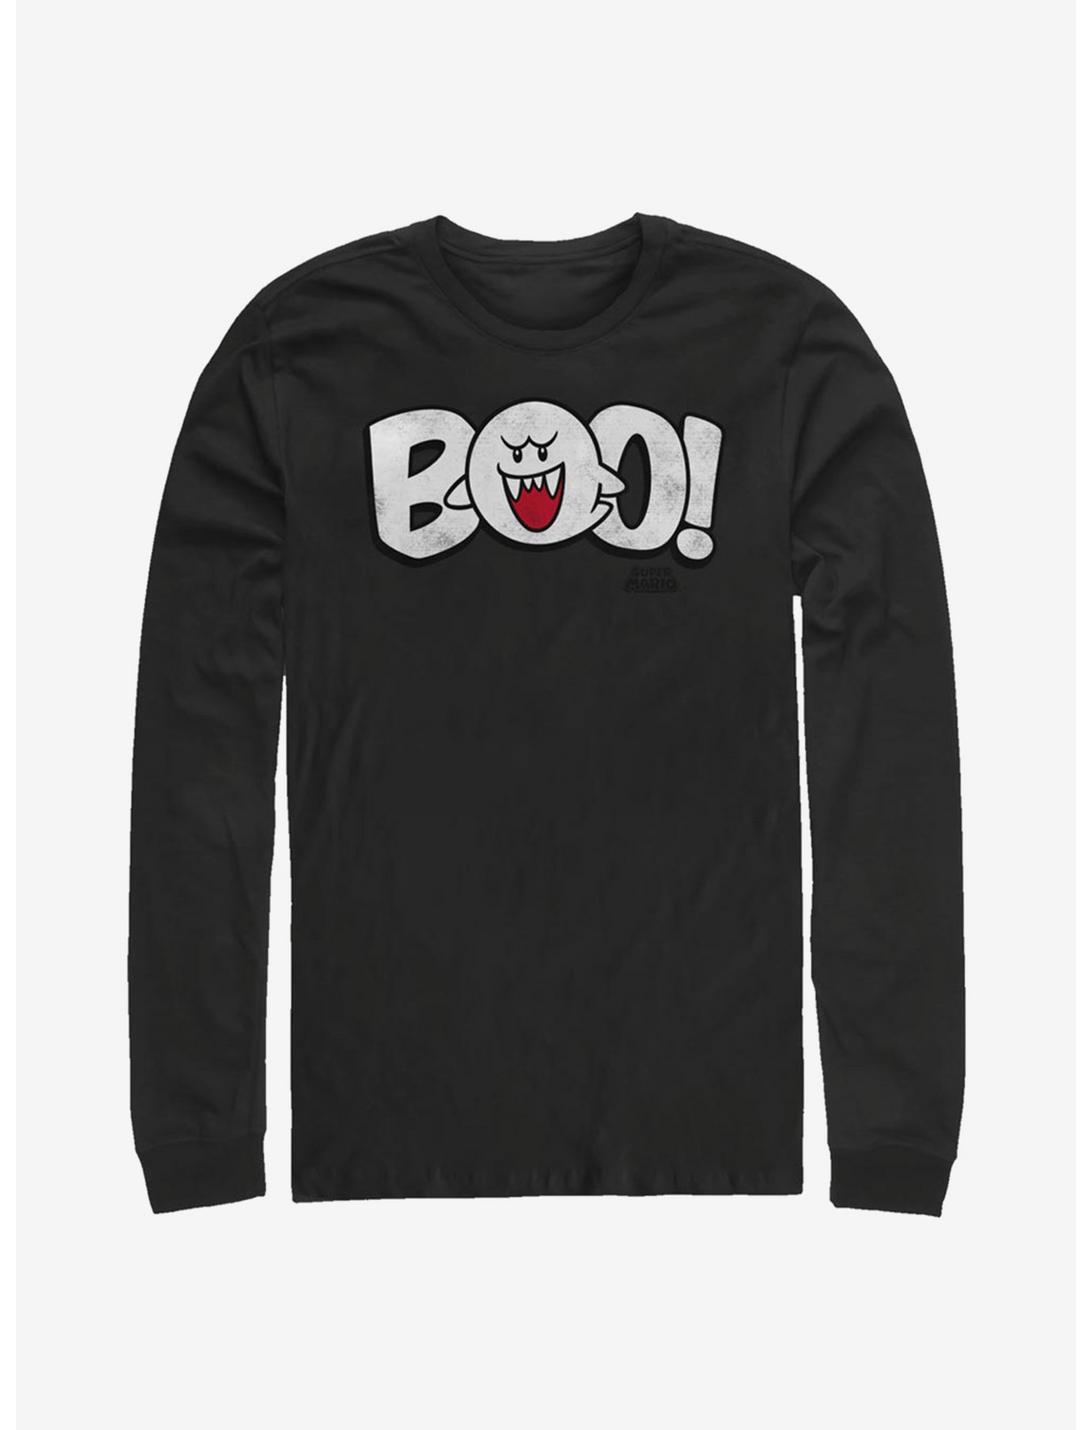 Super Mario Boo! Long-Sleeve T-Shirt, BLACK, hi-res